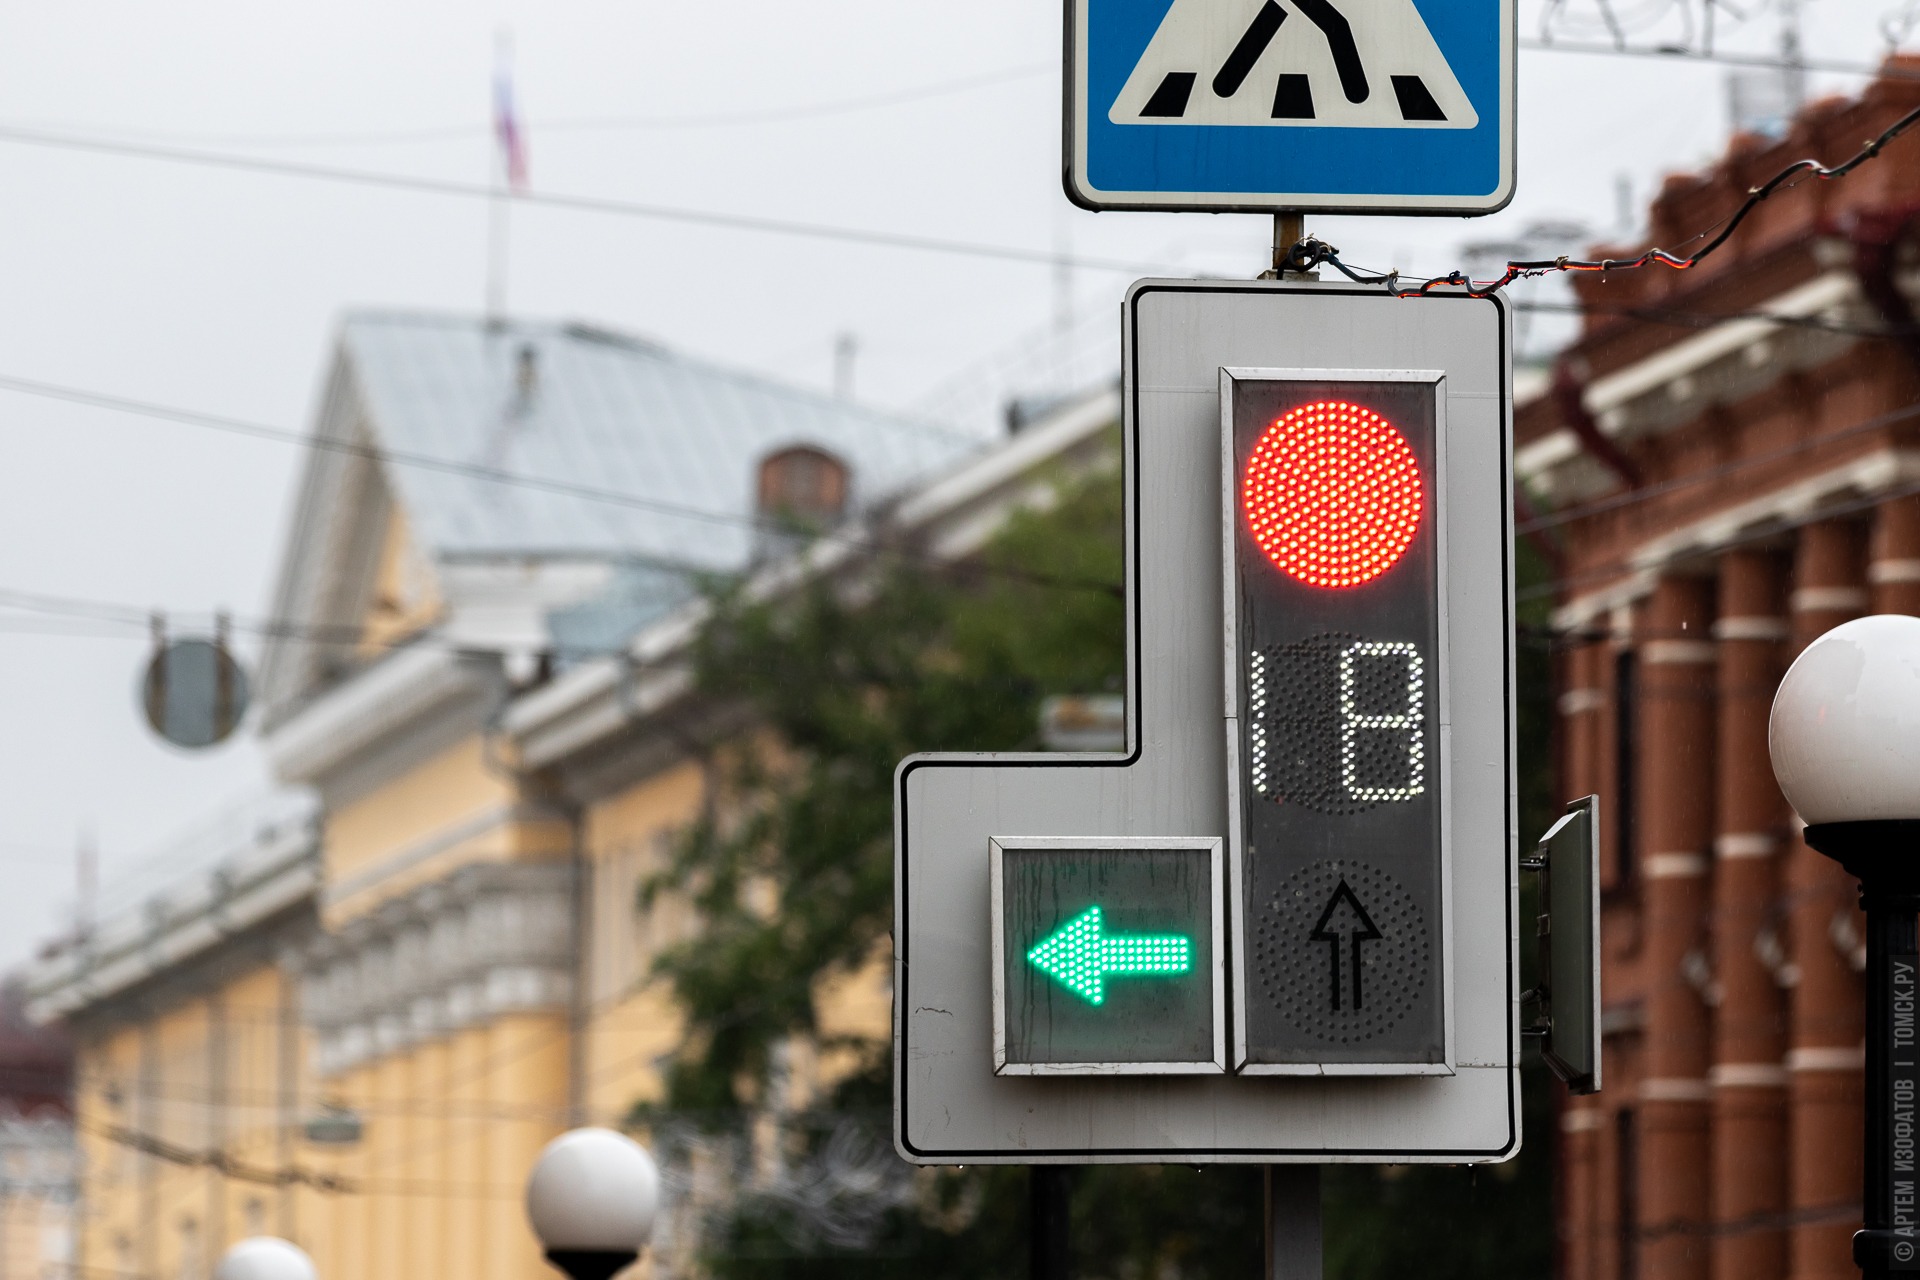 К началу учебного года власти Томска установят 19 светофоров рядом со школами и детскими садами